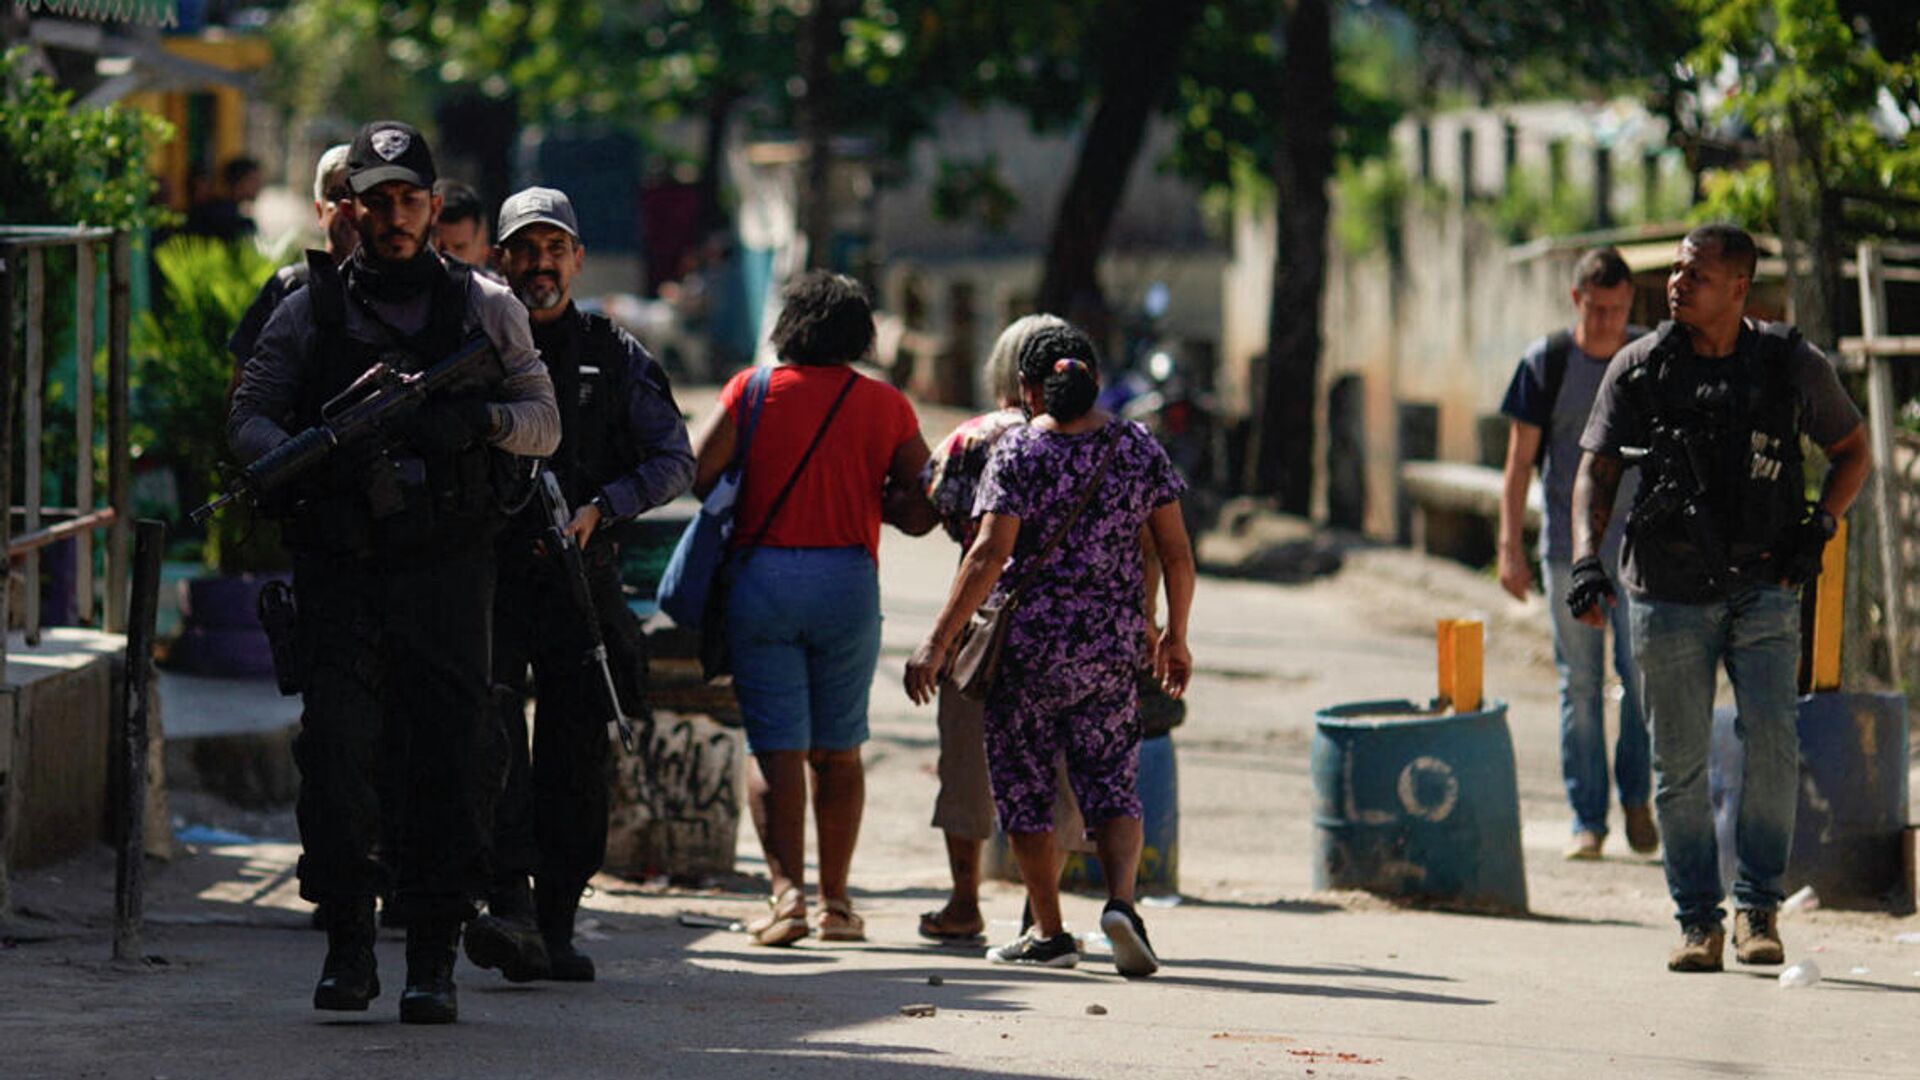 Полицейская операция по борьбе с незаконным оборотом наркотиков в районе Жакарезинью в Рио-де-Жанейро, Бразилия - РИА Новости, 1920, 06.05.2021